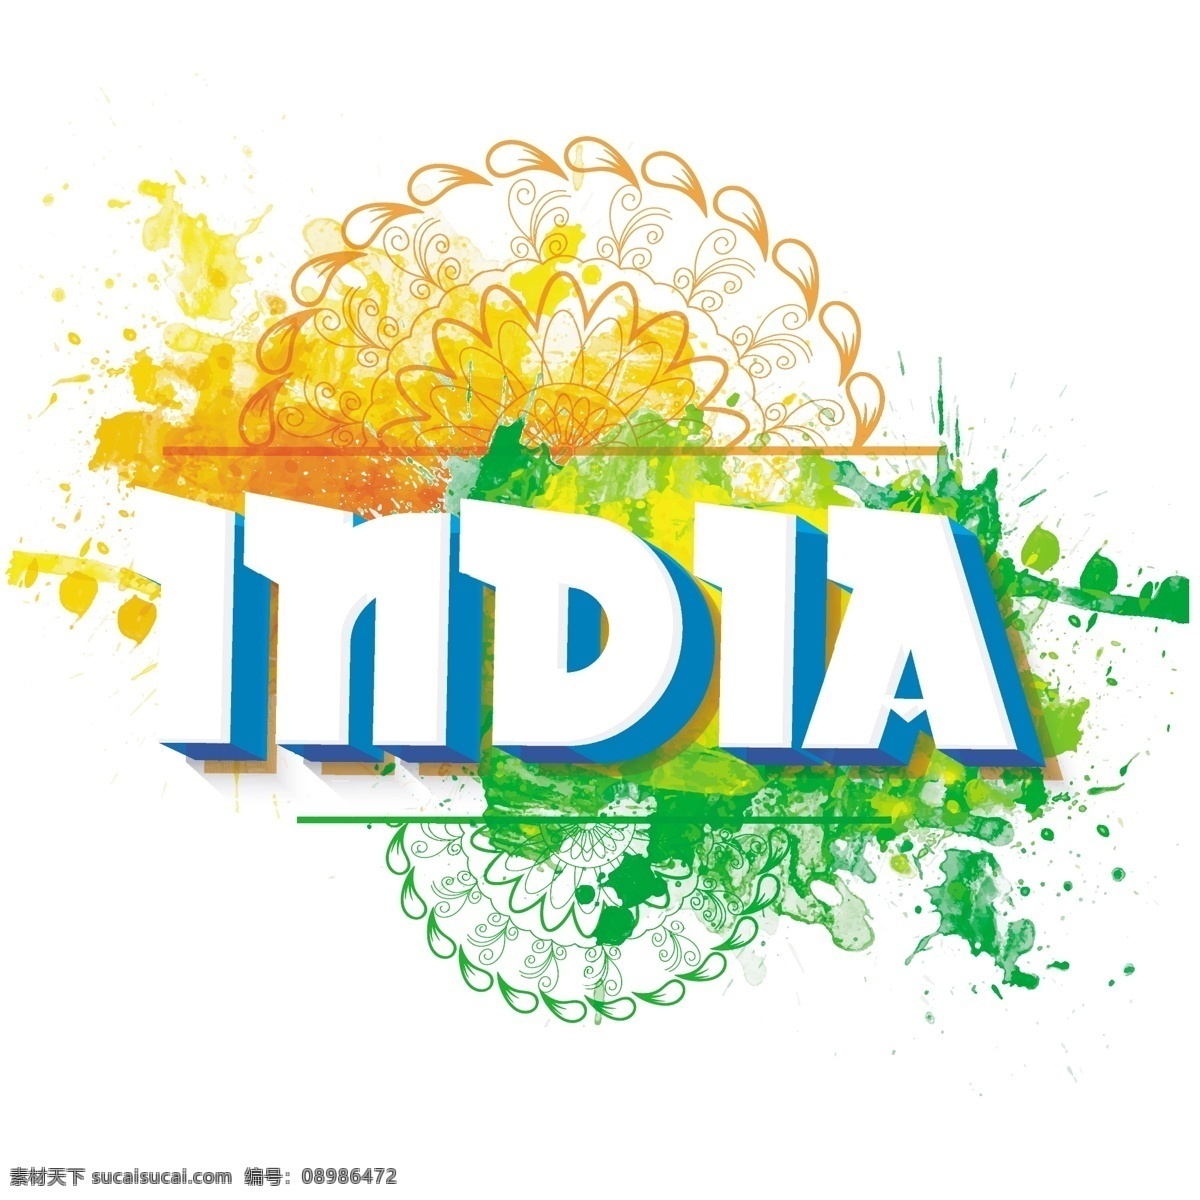 美妙 印度共和国 日 背景 五颜六色 污渍 水彩 装饰 国旗 水彩背景 色彩 节日 多彩 印度 丰富多彩 和平 自由 国家 印度国旗